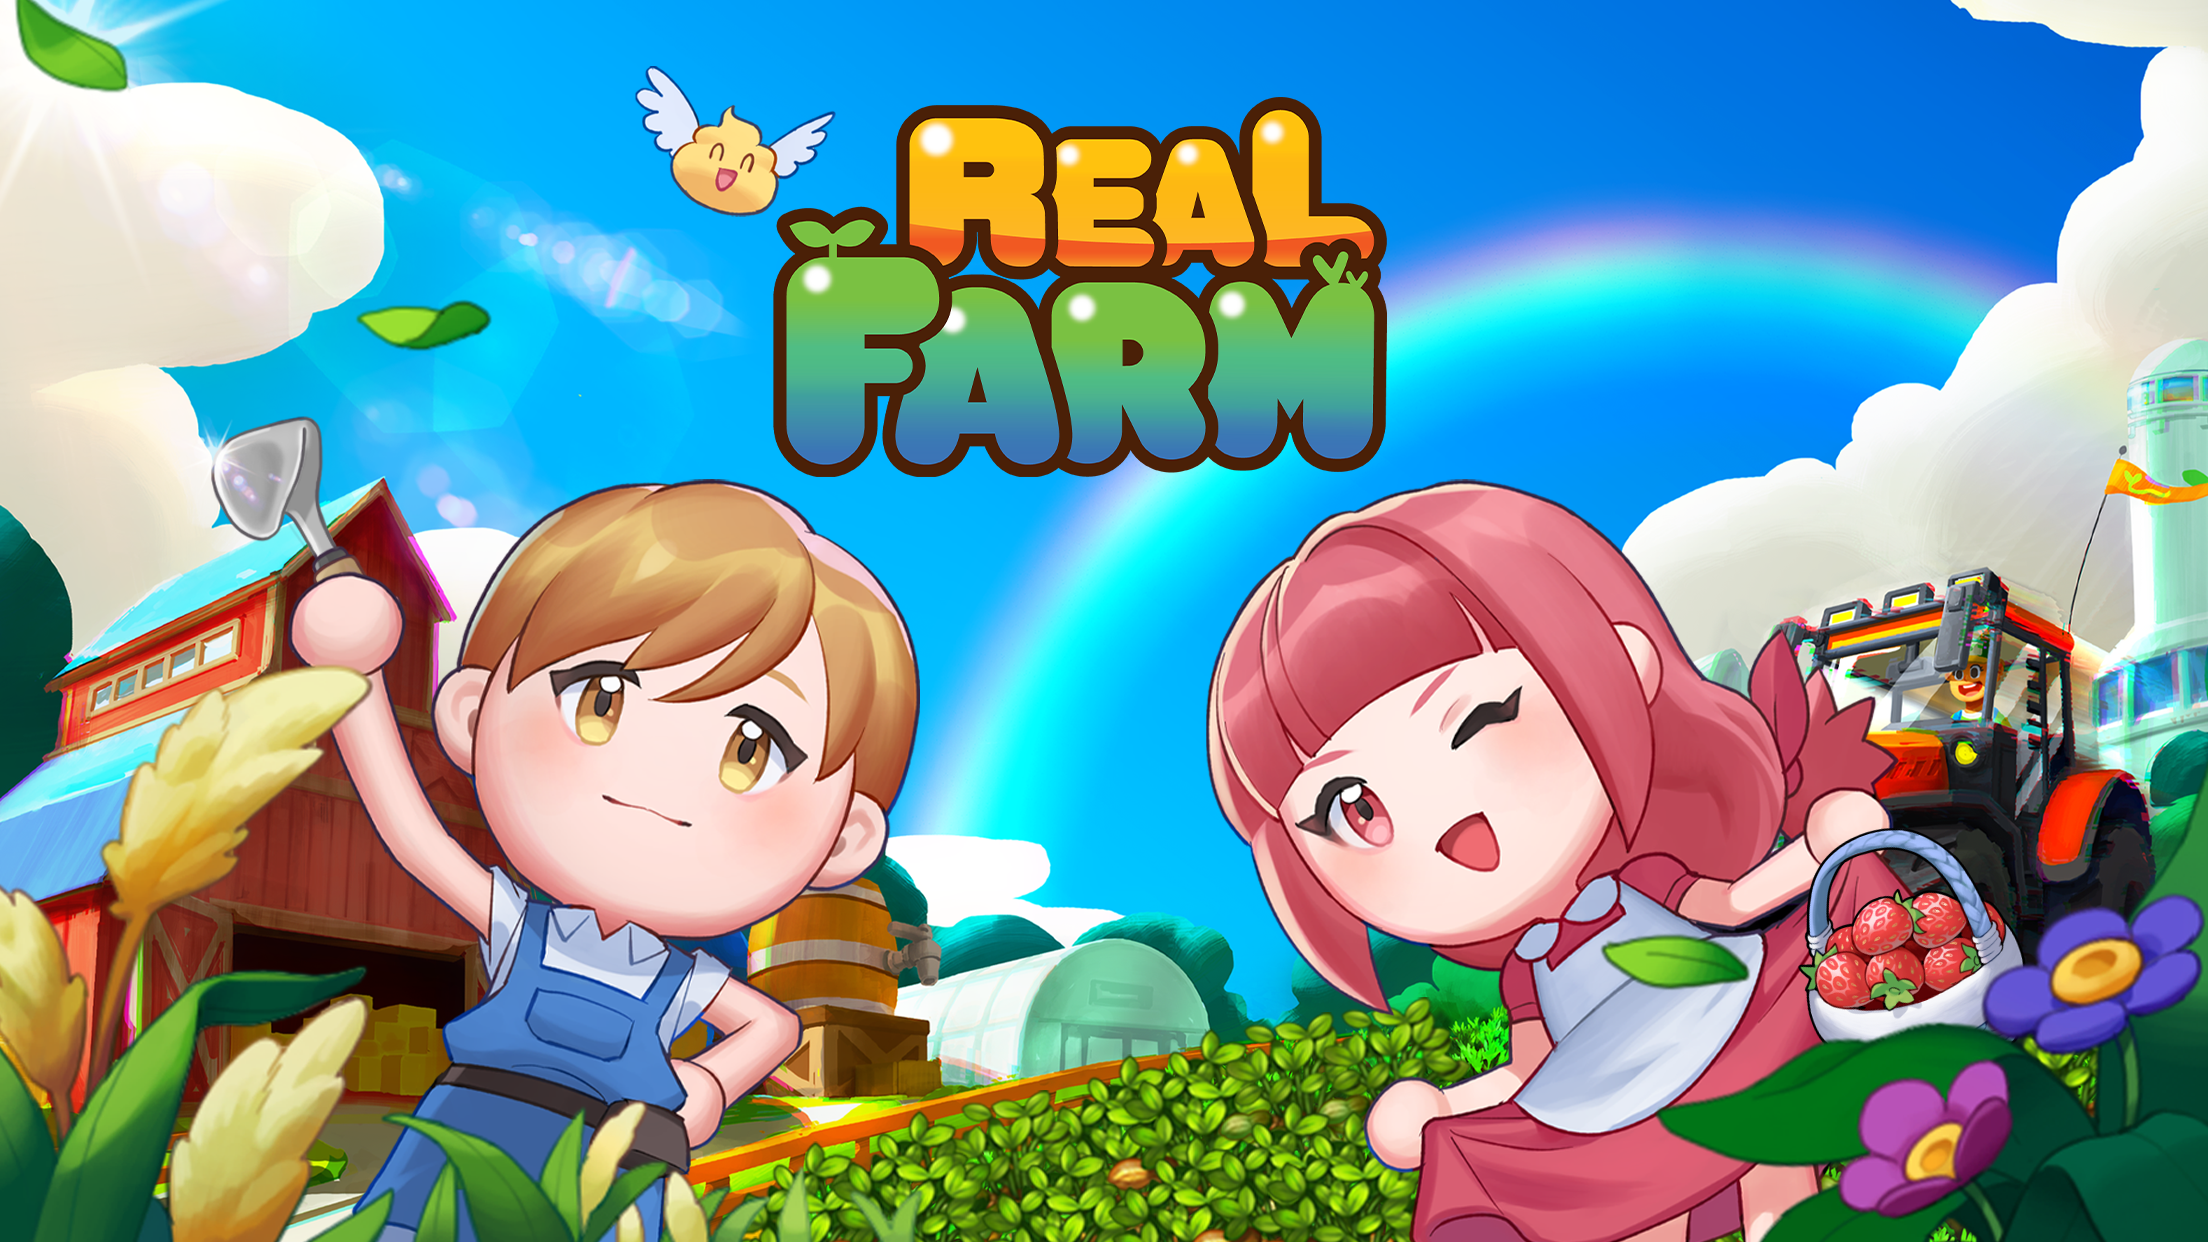 Screenshot 1 of Real Farm: un gioco in cui incontri un vero contadino 